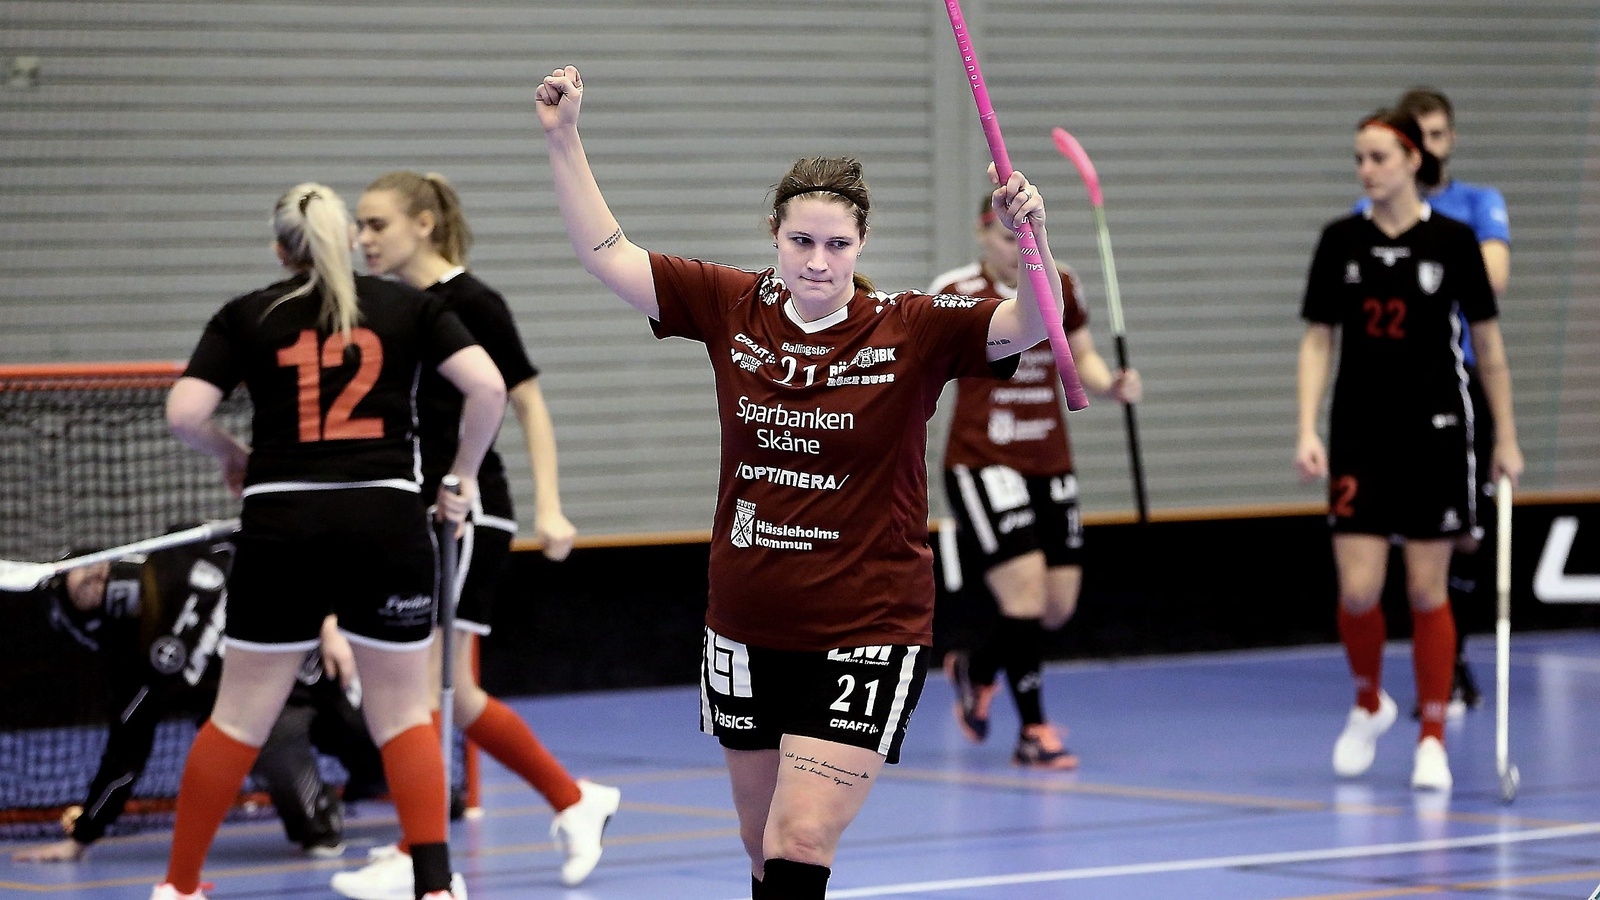 Anna Olsson signalerar för mål. Det blev fyra pytsar från Rökeveteranens klubba i seriefinalen mot Landskrona.
Foto: Stefan Sandström